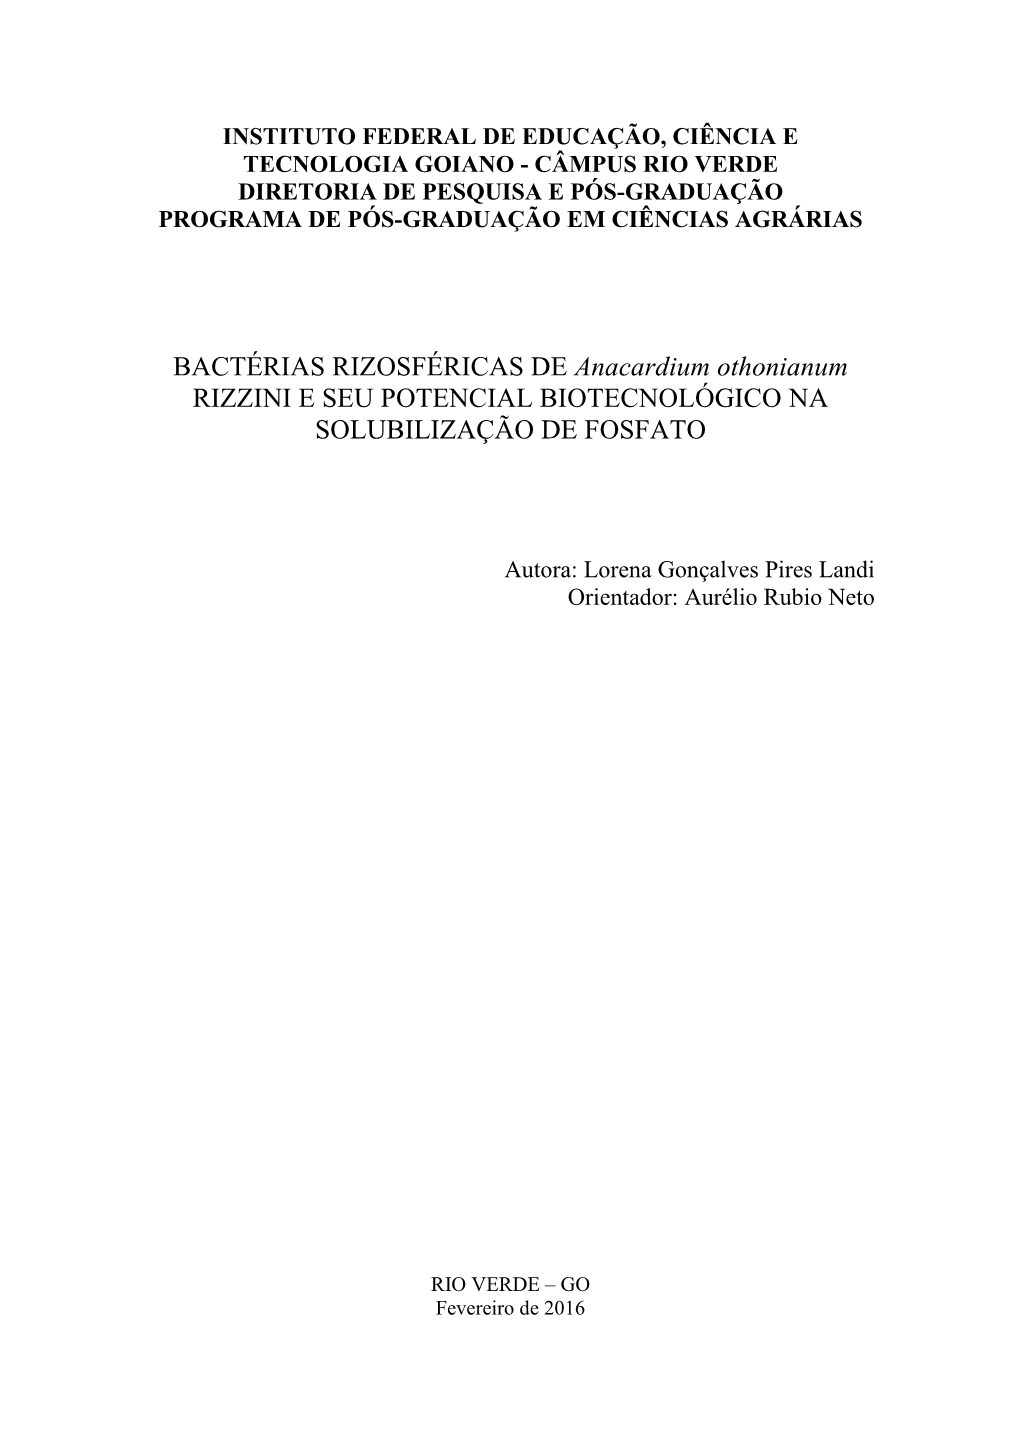 Anacardium Othonianum RIZZINI E SEU POTENCIAL BIOTECNOLÓGICO NA SOLUBILIZAÇÃO DE FOSFATO